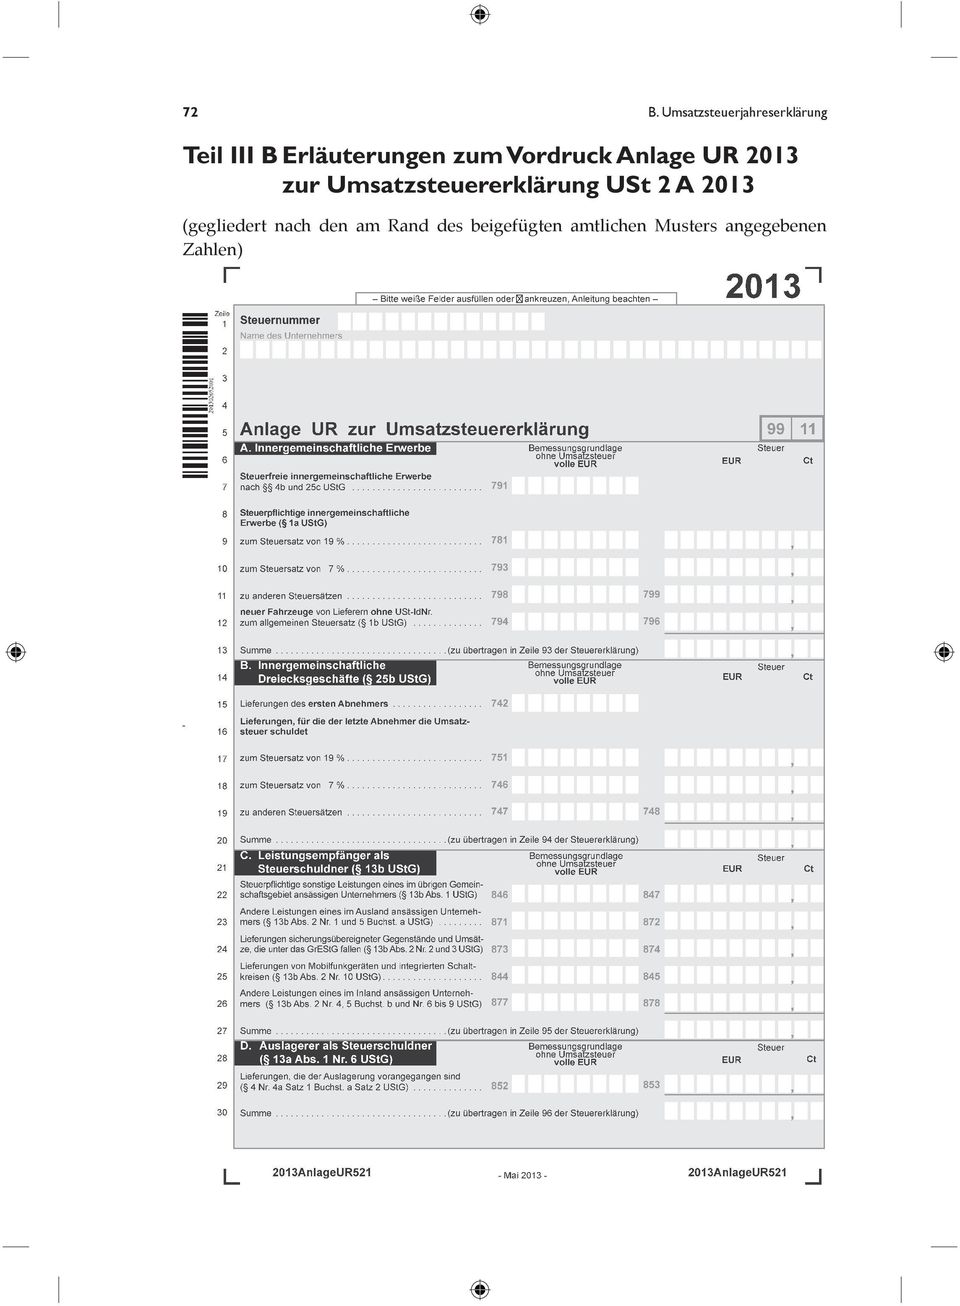 Umsatzsteuererklärung USt 2 A 2013 (gegliedert nach